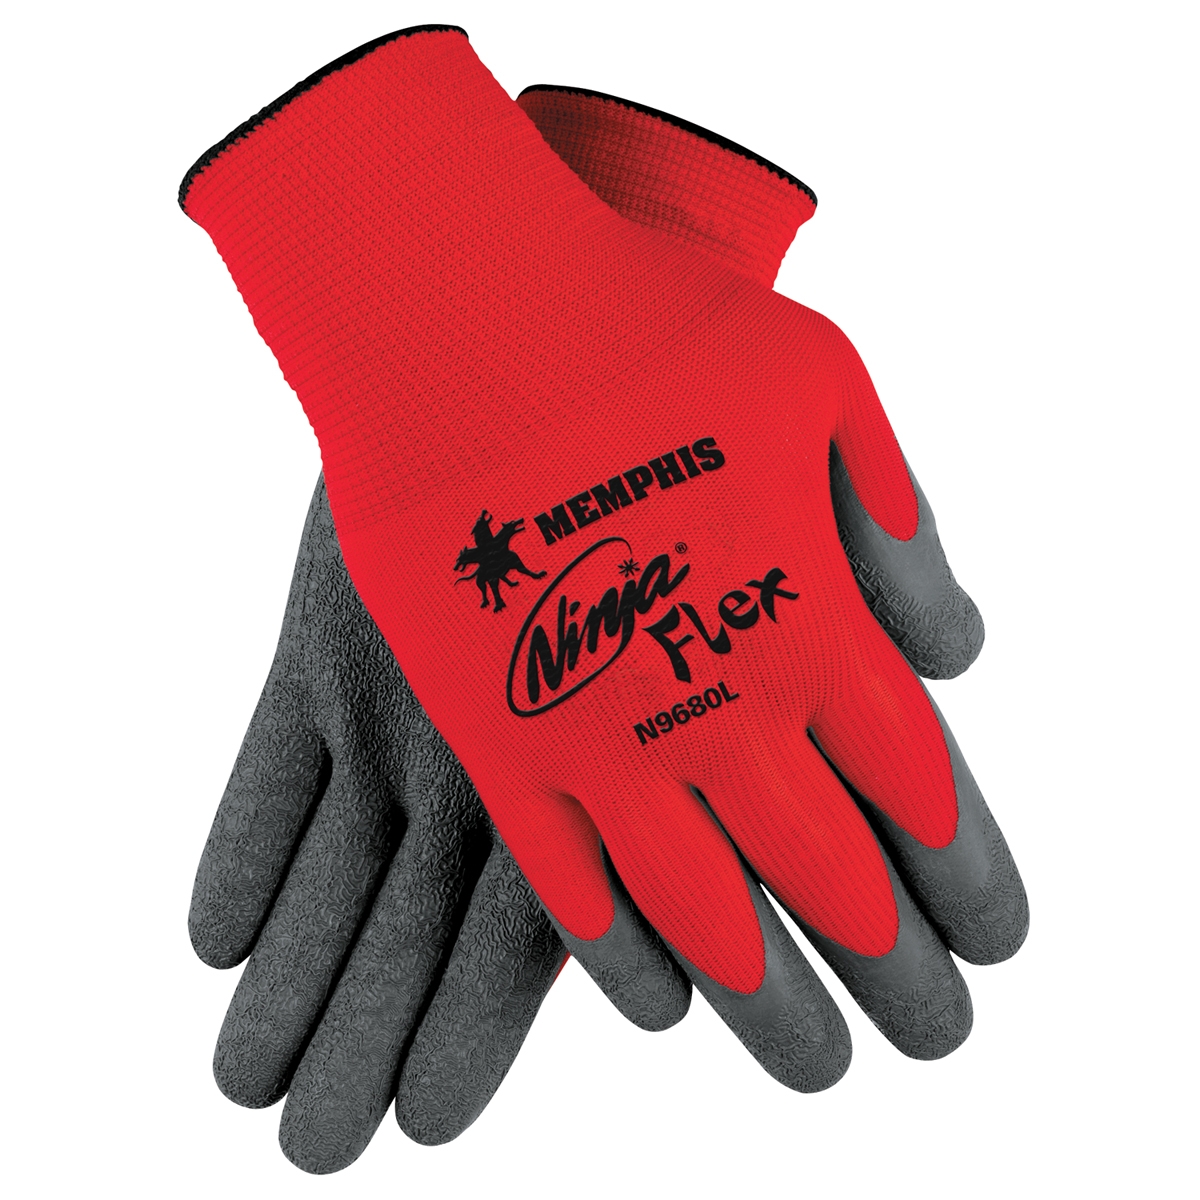 latex coated work gloves